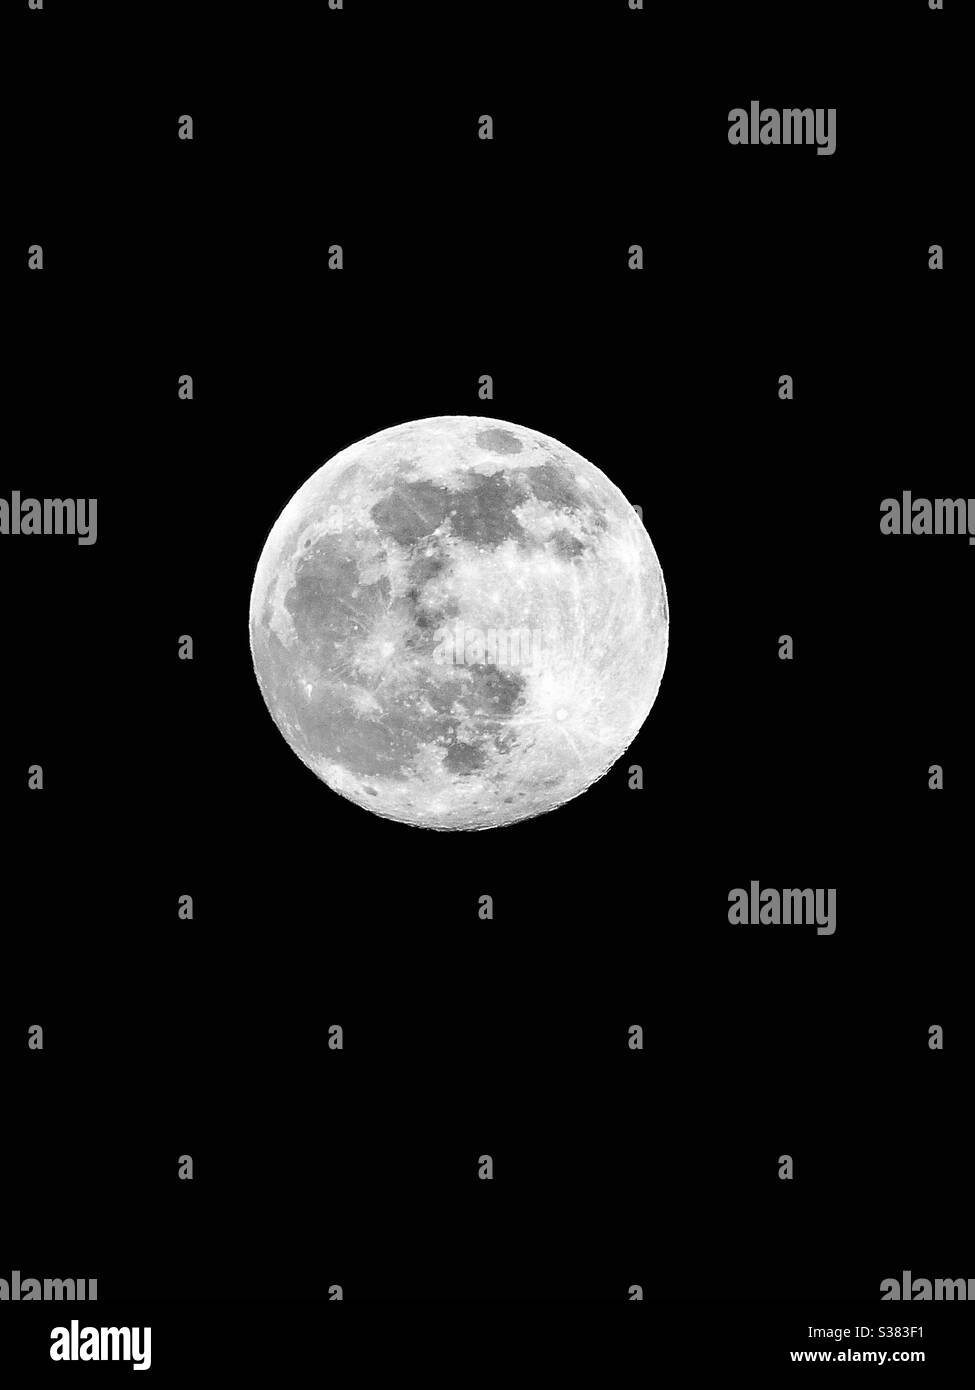 Una bella luna piena, che ho catturato sulla mia Panasonic FZ200 con il suo fantastico obiettivo f2.8 da 25-600mm. Sono stato molto soddisfatto del modo in cui è uscito questo scatto, e anche con gli altri che ho ottenuto quella notte. Foto Stock